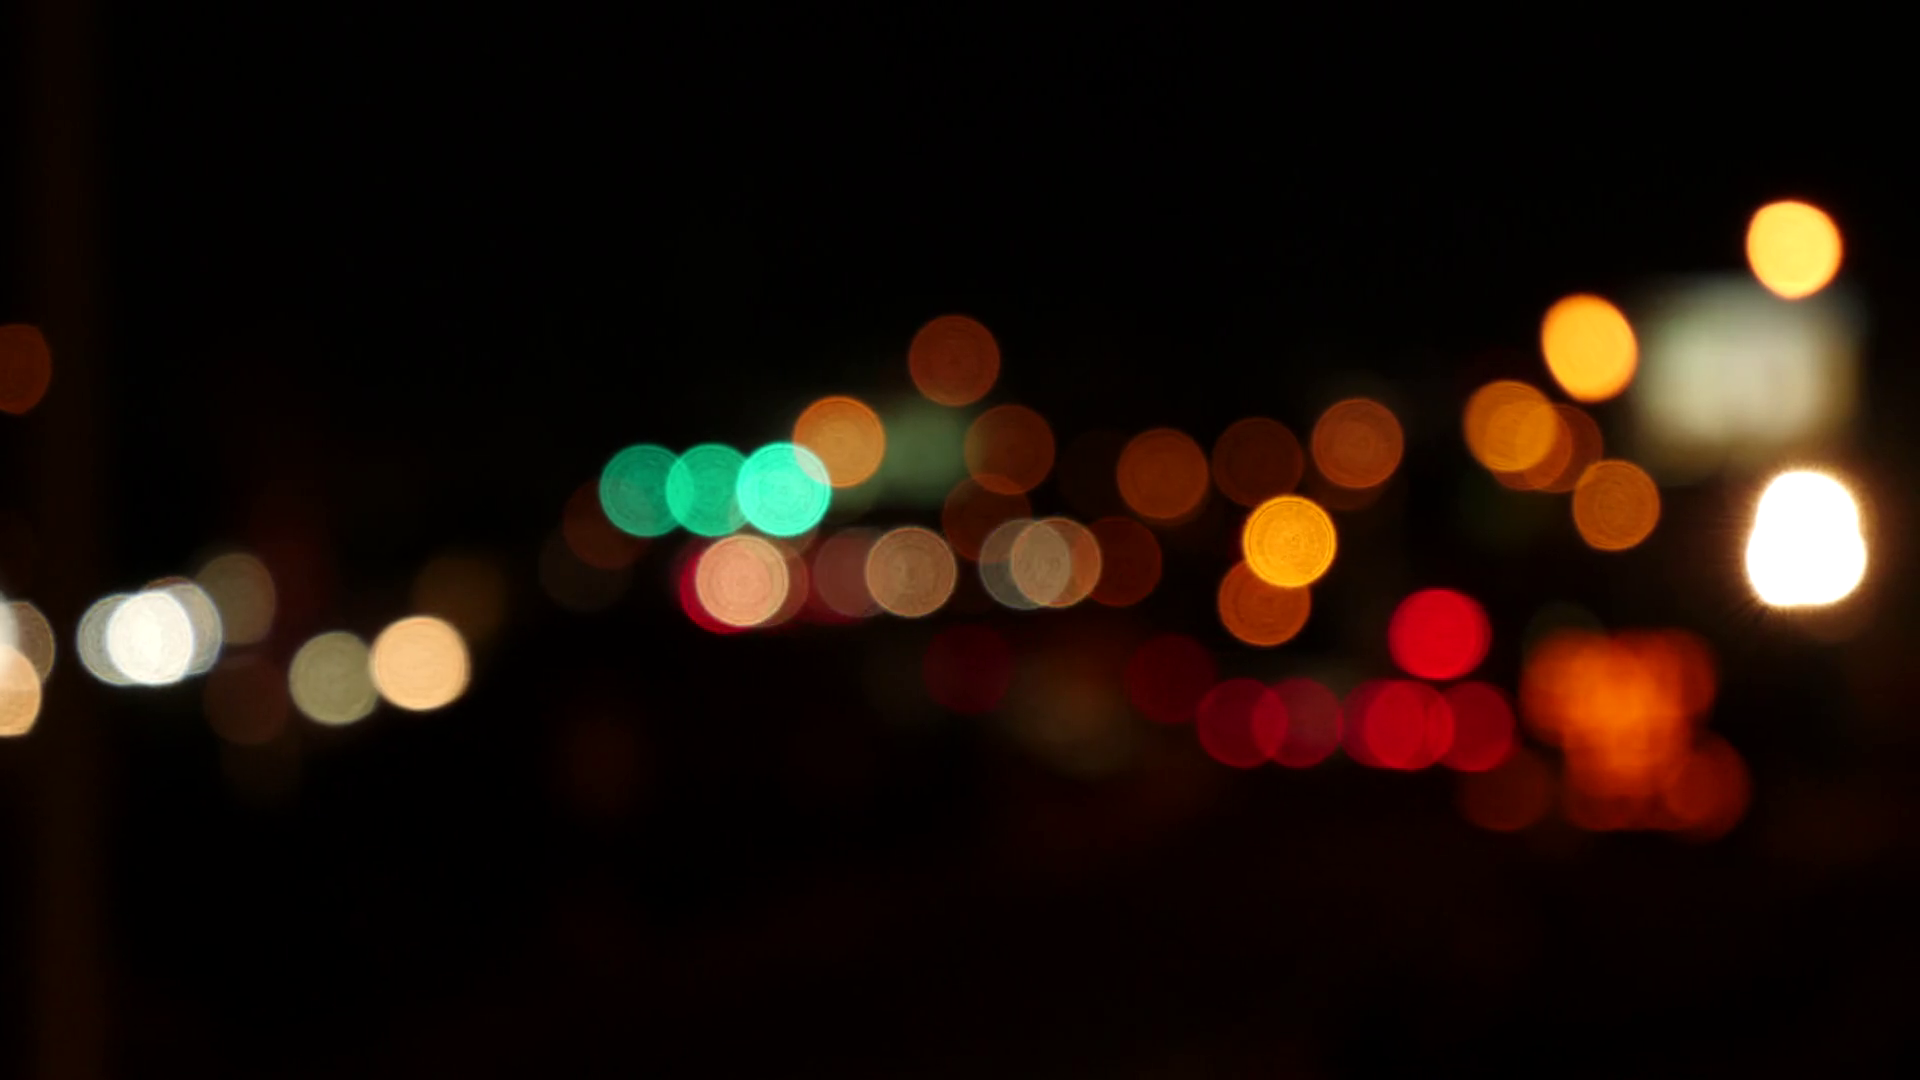 Colorful traffic car lights at night, de-focused bokeh balls. Stock ...